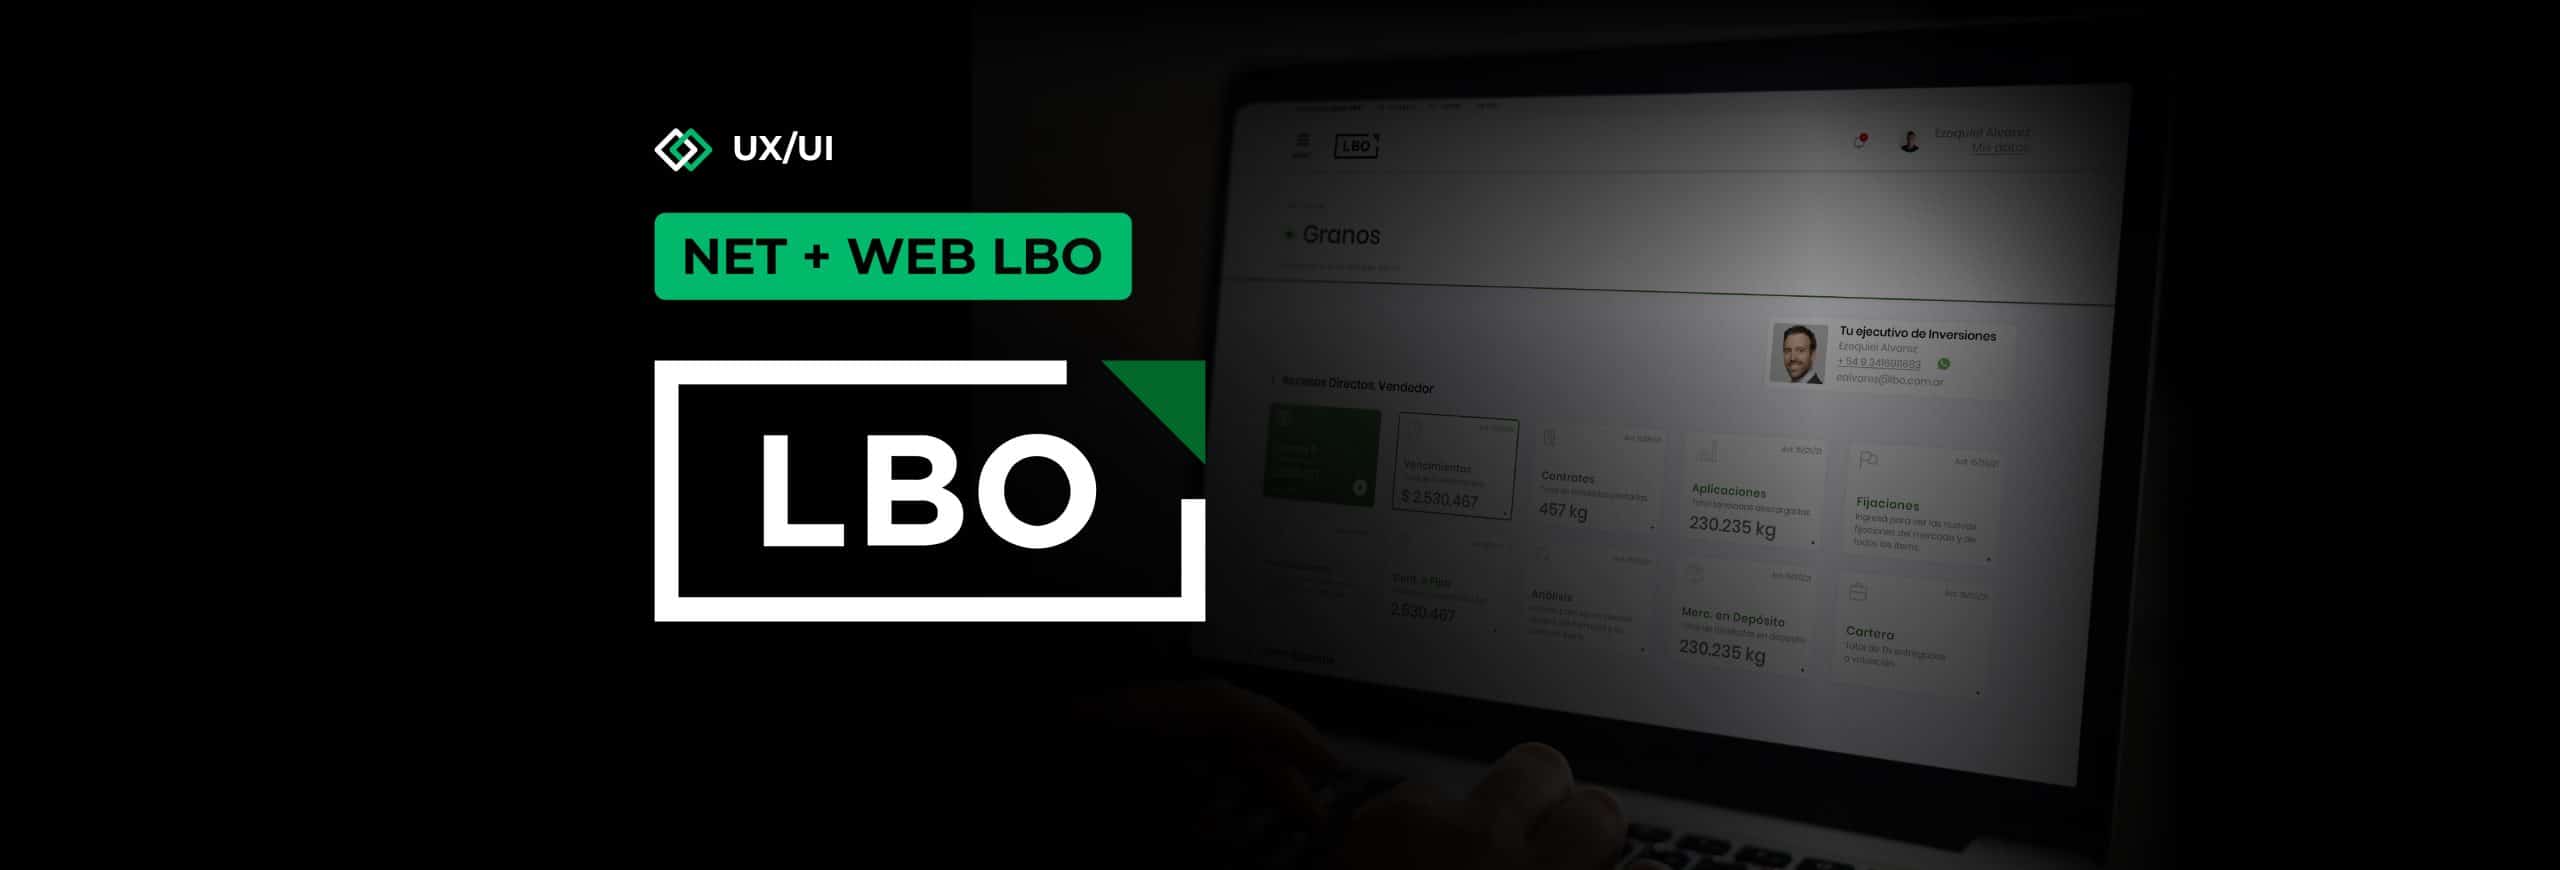 LBO: diseñamos y desarrollamos su extranet y su nueva web